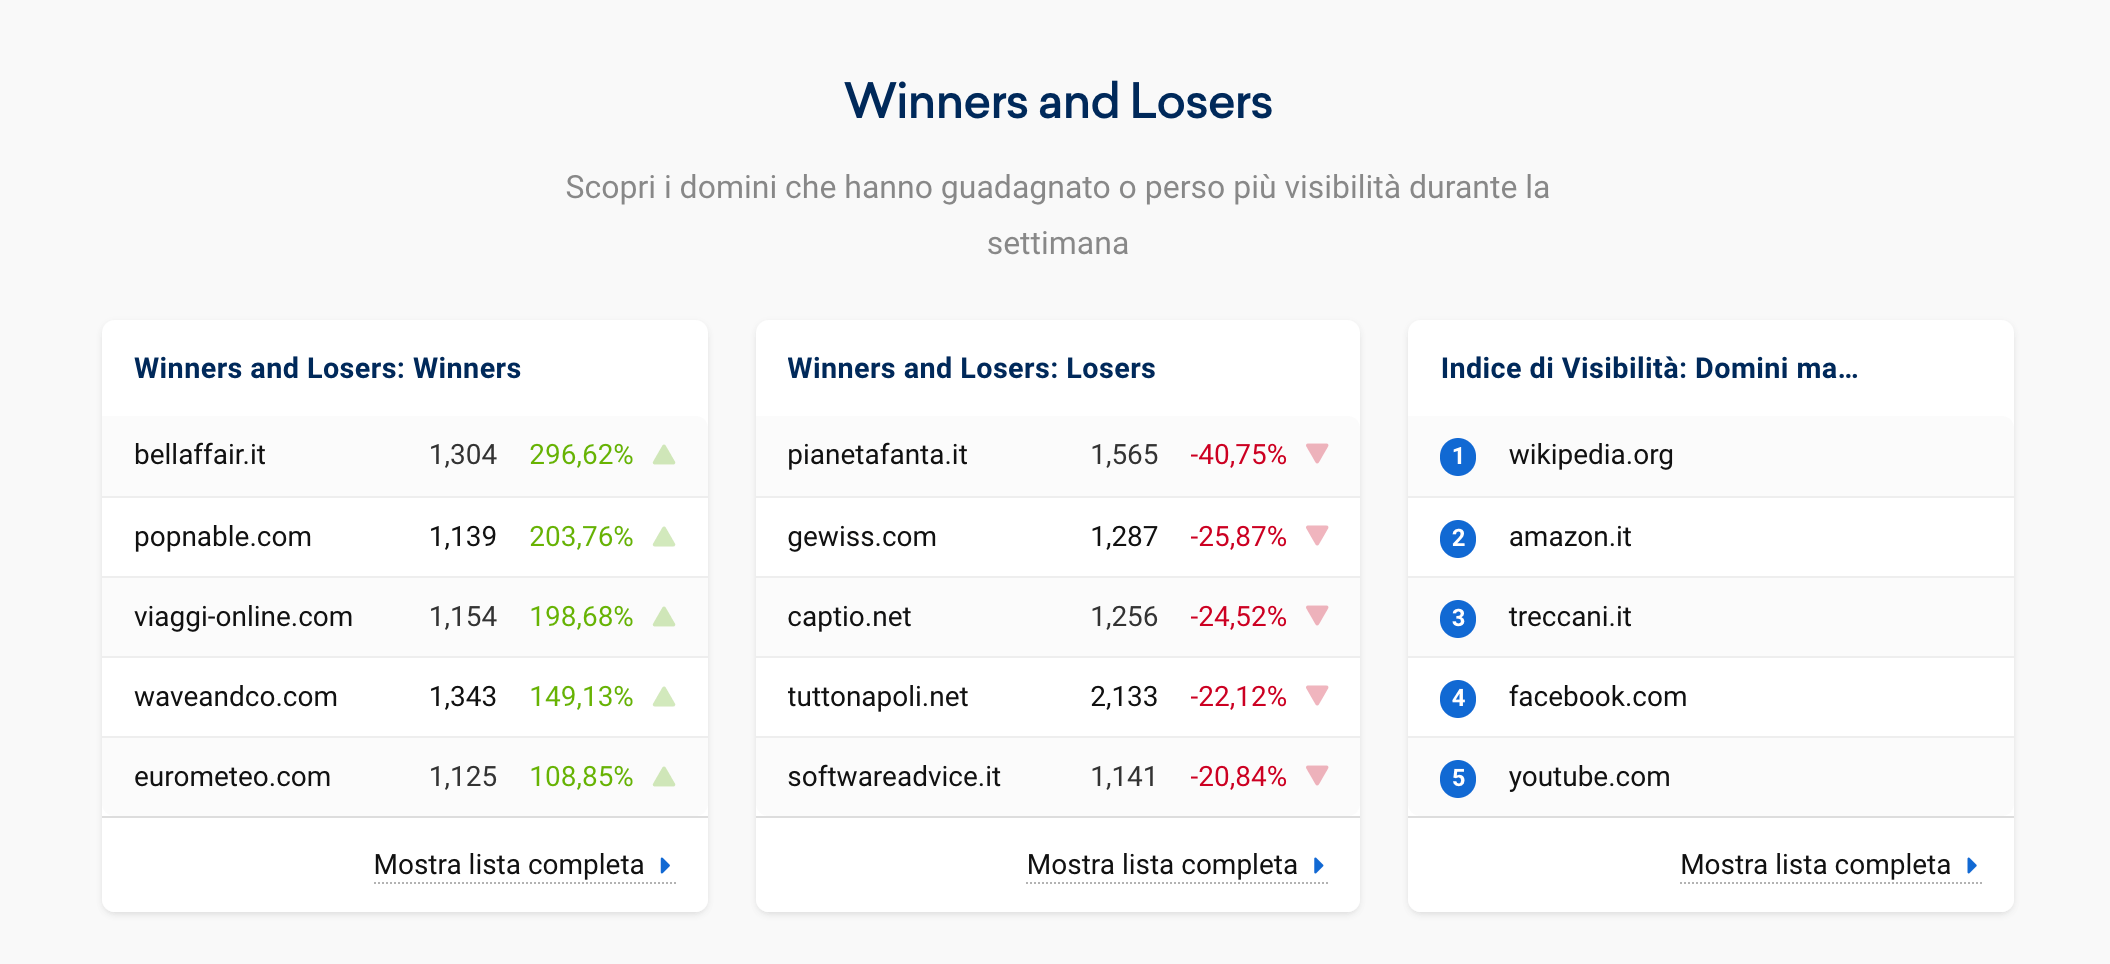 Elenco "Domini vincitori e perdenti"